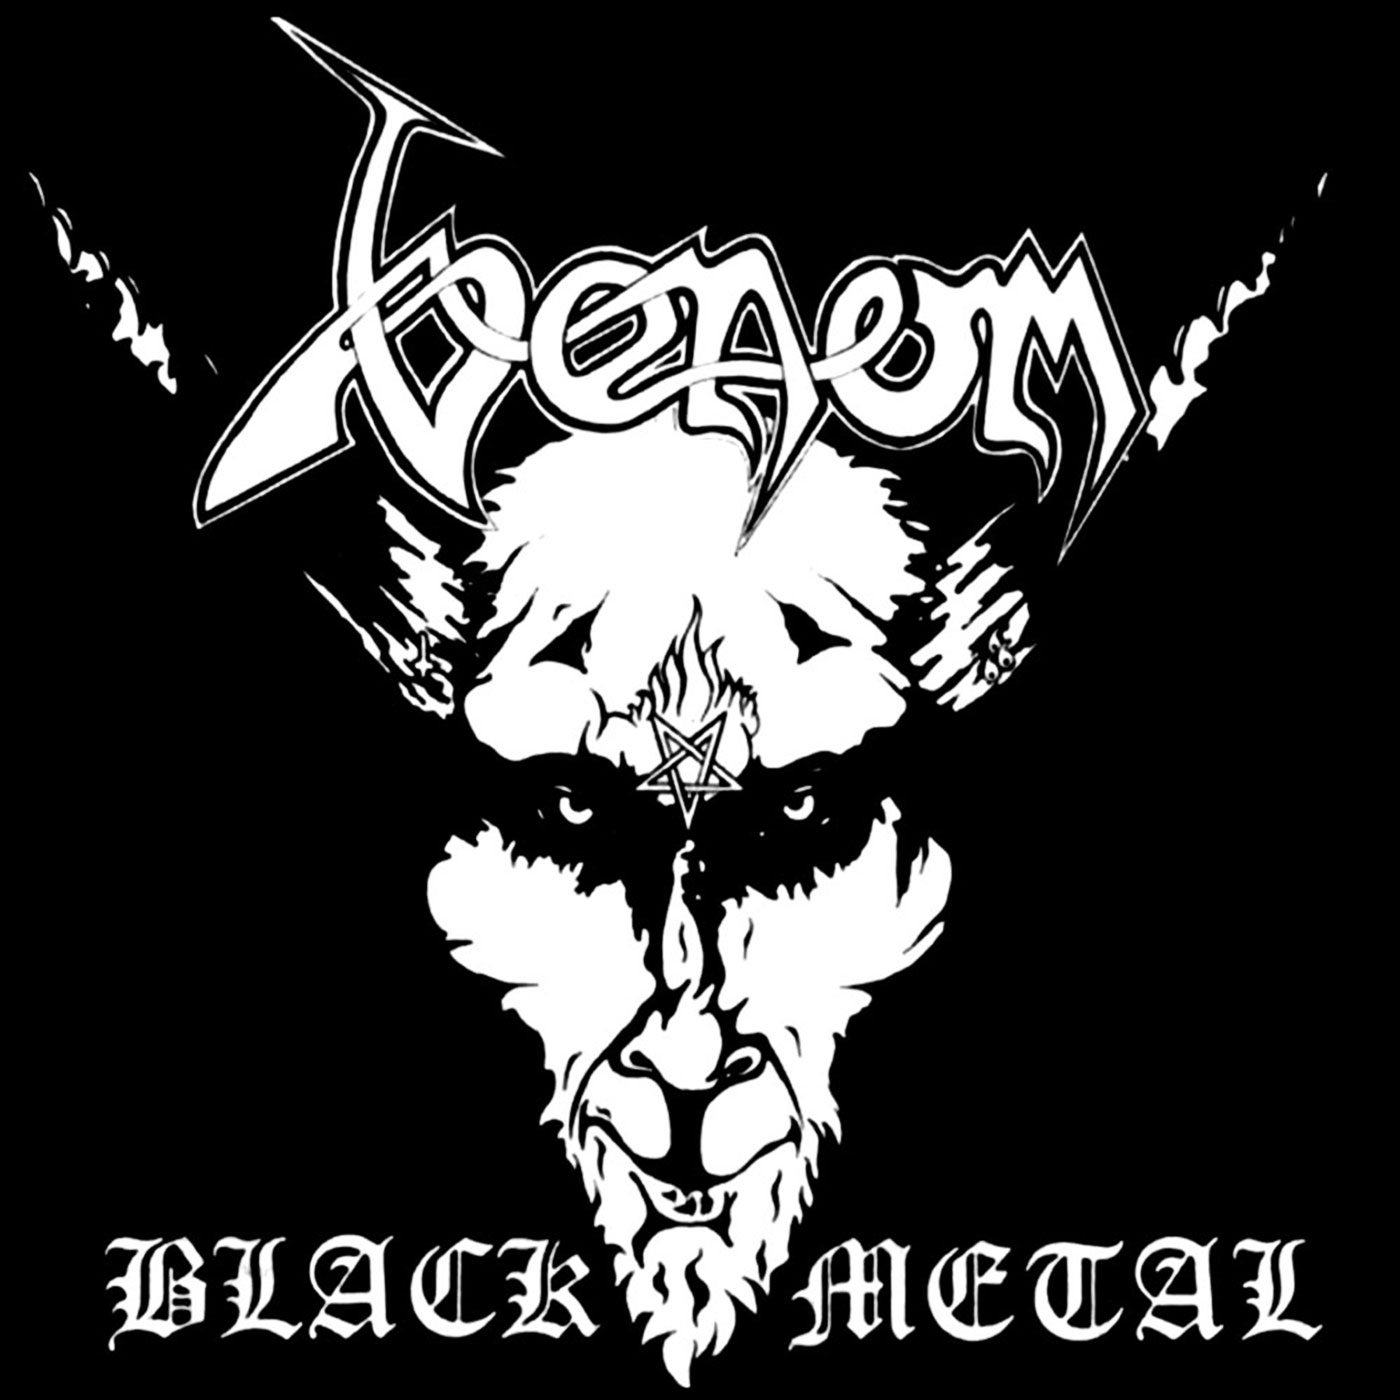 510 Venom – Black Metal